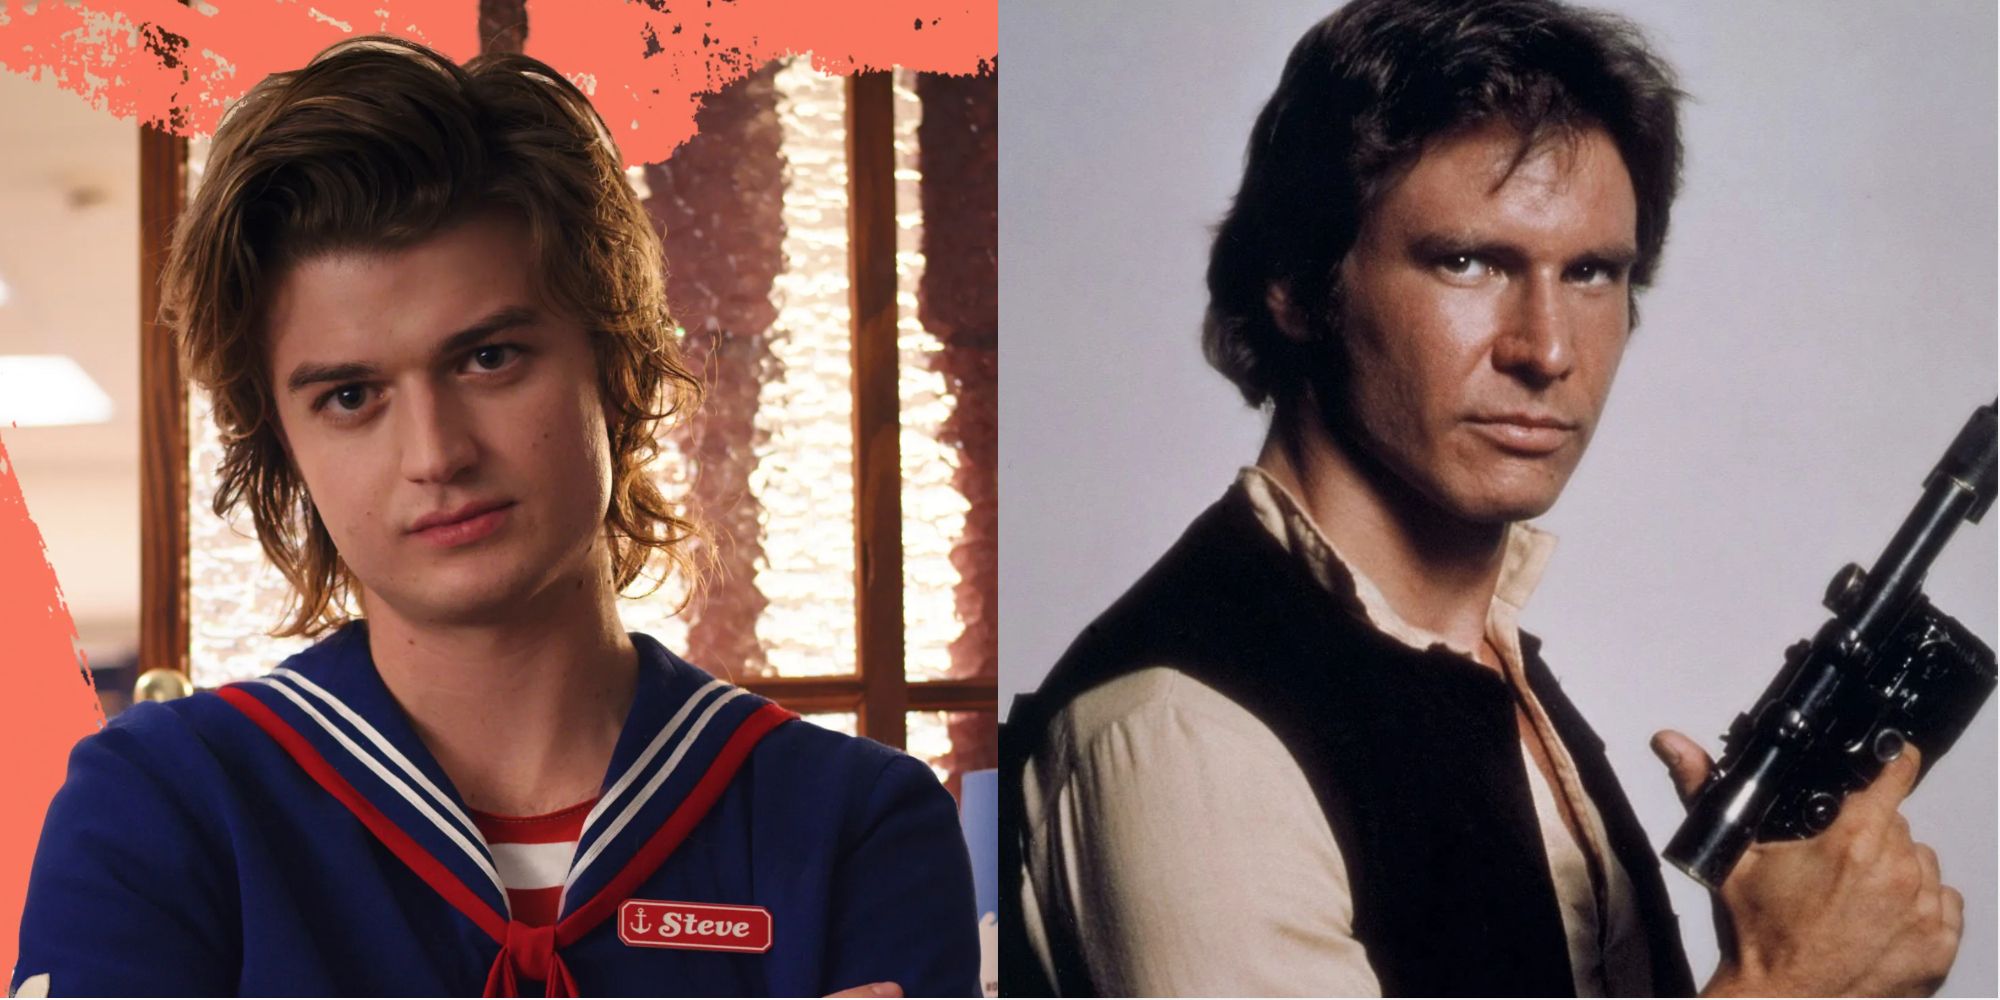 Split images of Steve Harrington in Stranger Things and Han Solo in Star Wars